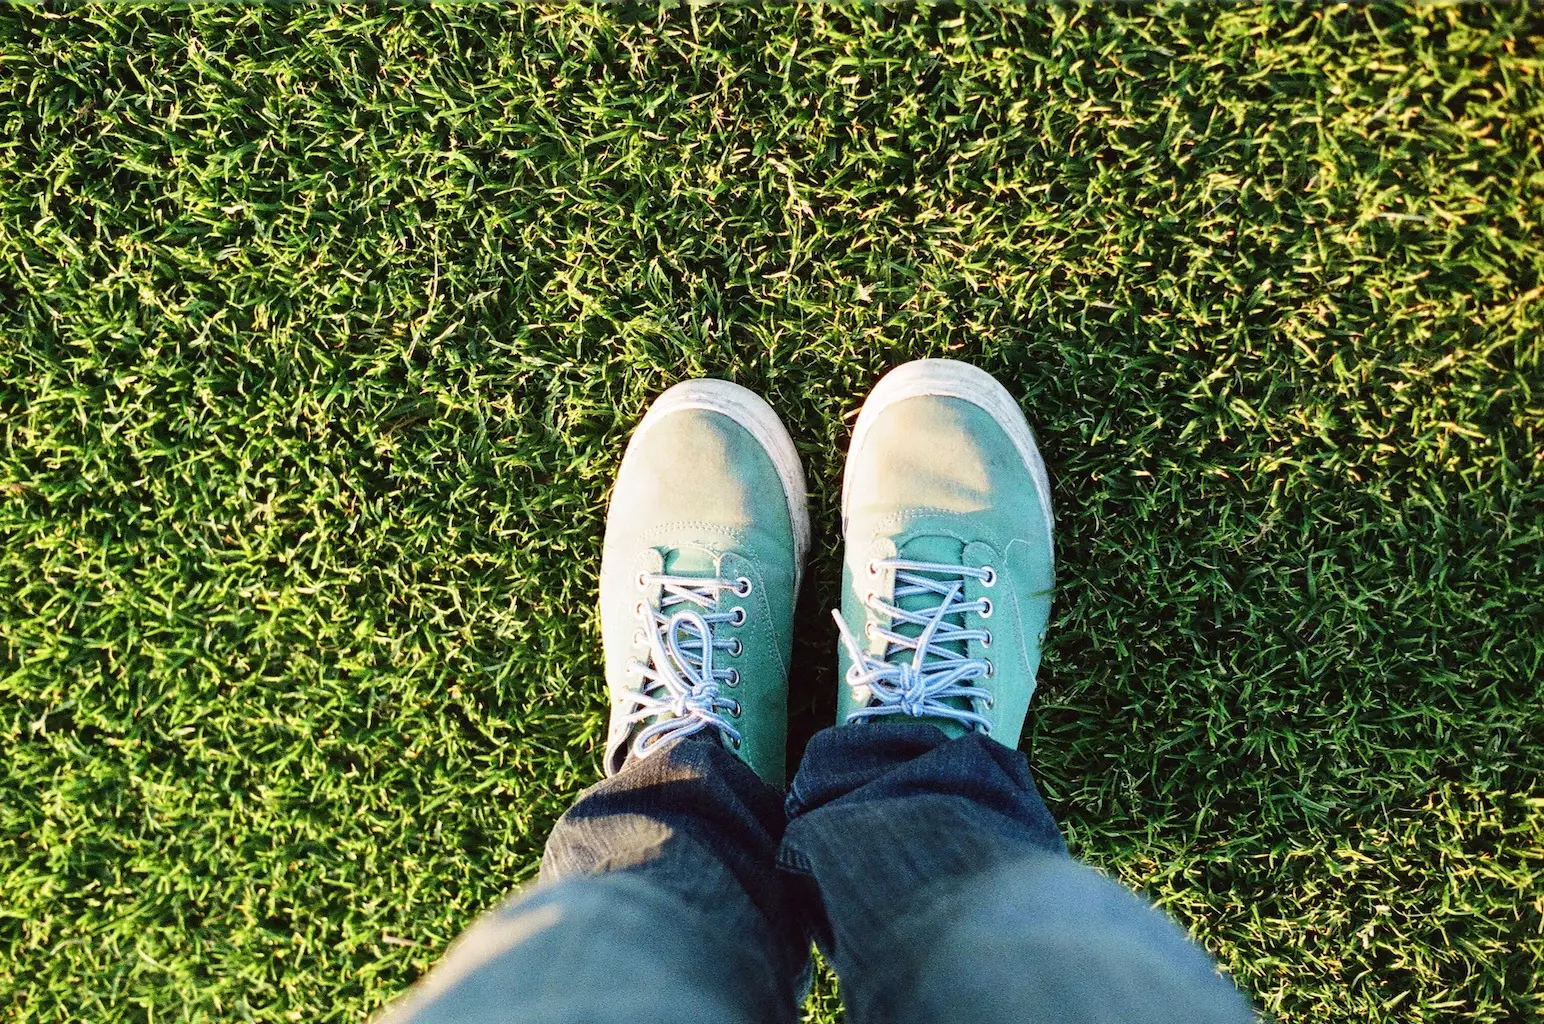 Feet standing on green, healthy grass